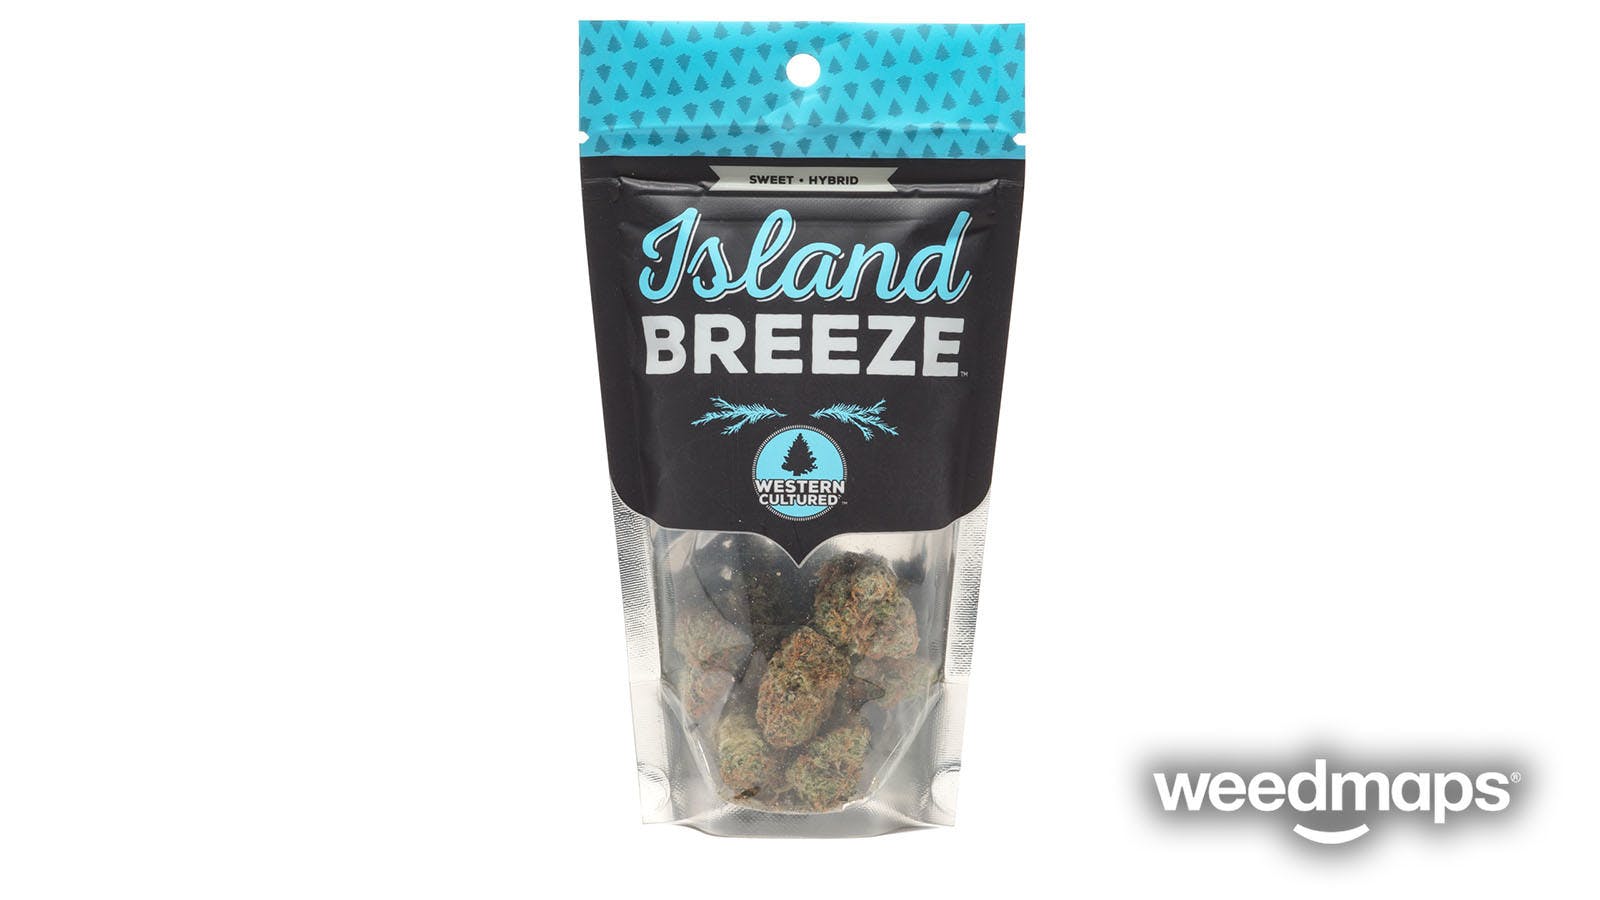 marijuana-dispensaries-cinder-spokane-valley-in-spokane-valley-island-breeze-western-cultured